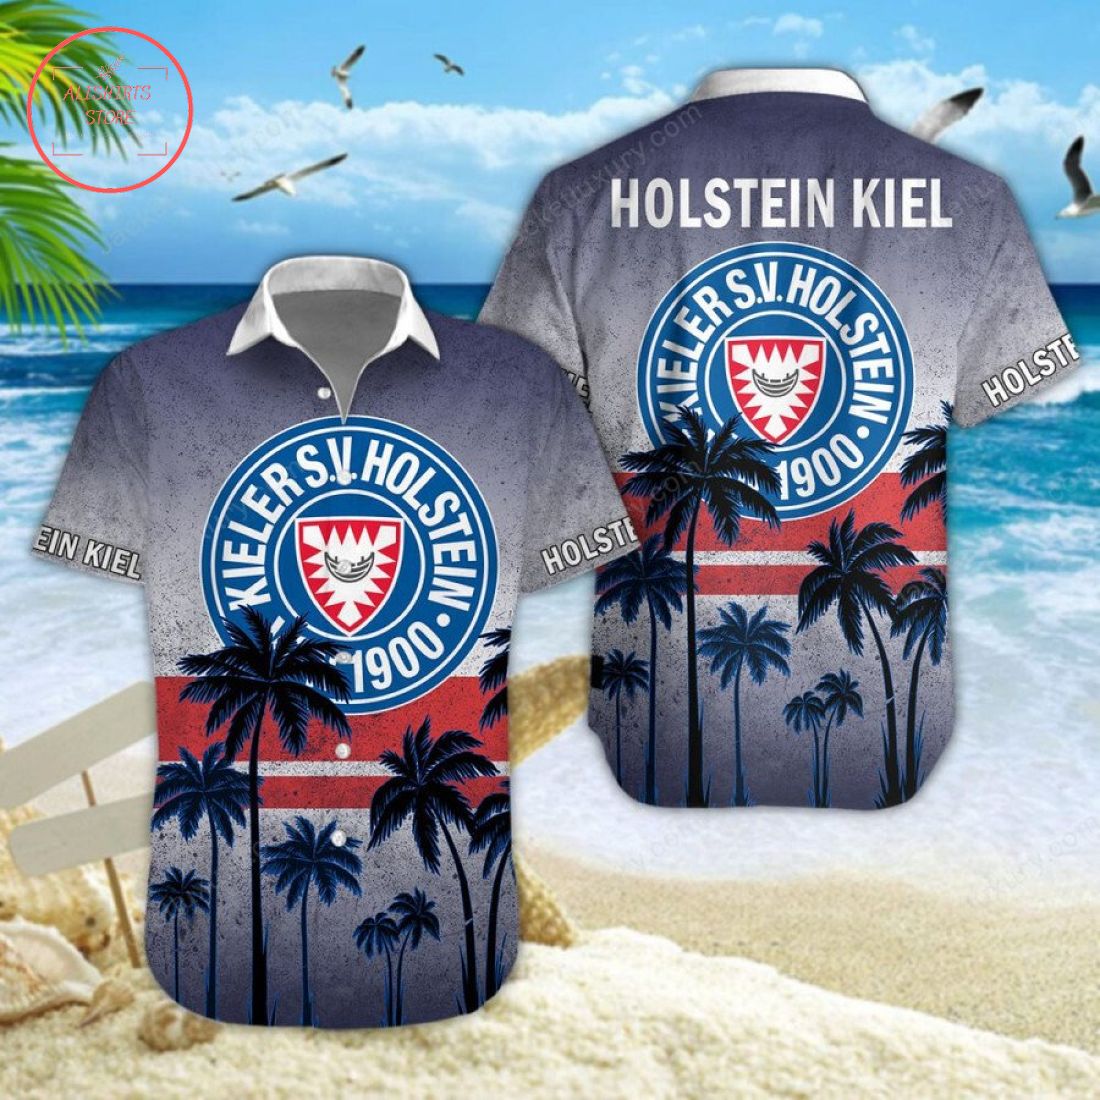 Holstein Kiel Hawaiian Shirt and Shorts